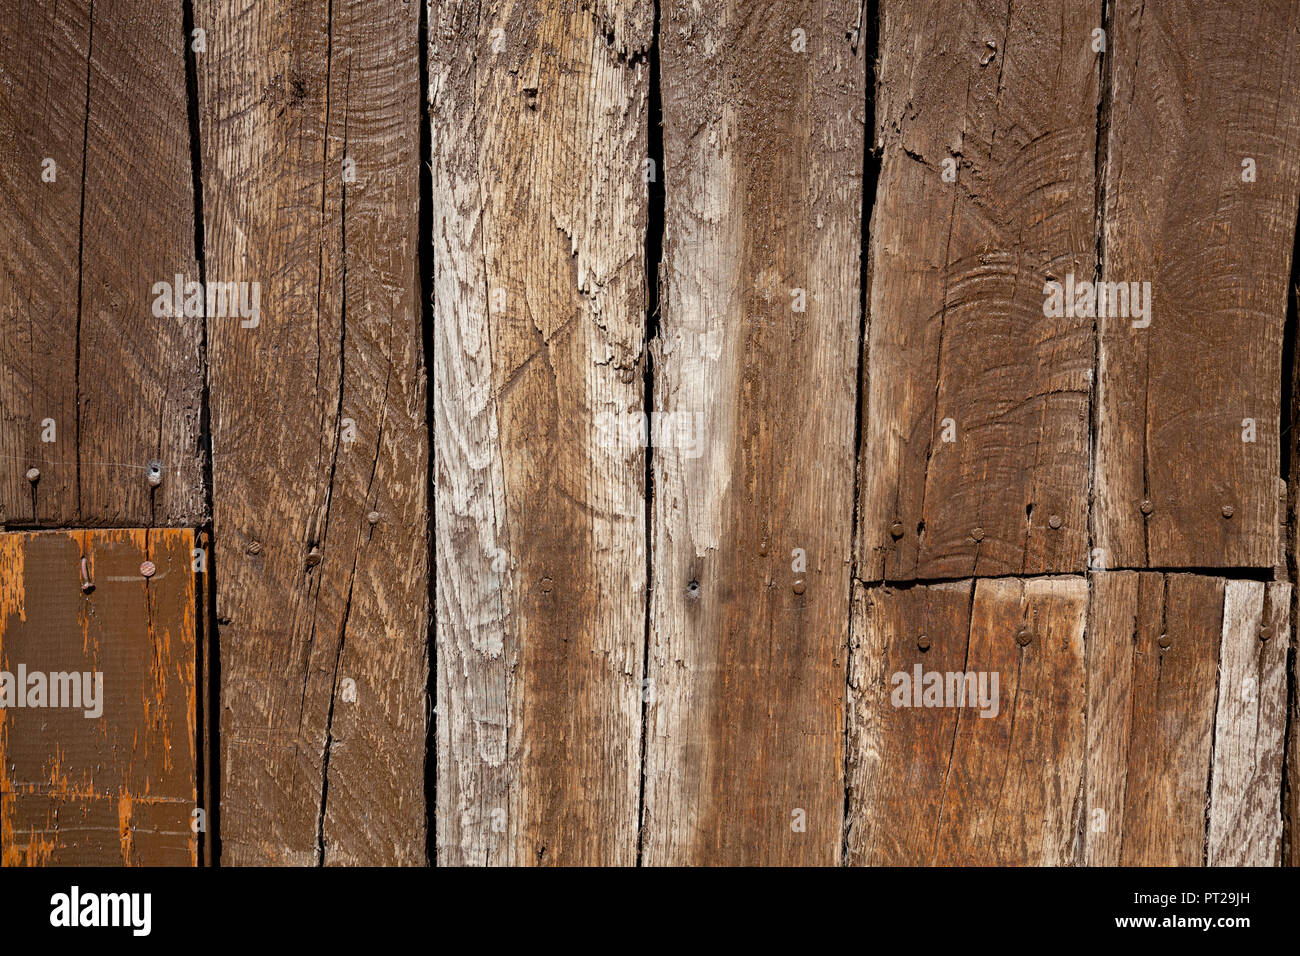 La texture de vieux brown des lamelles en bois. Personnes âgées et détérioré par le passage du temps. Banque D'Images